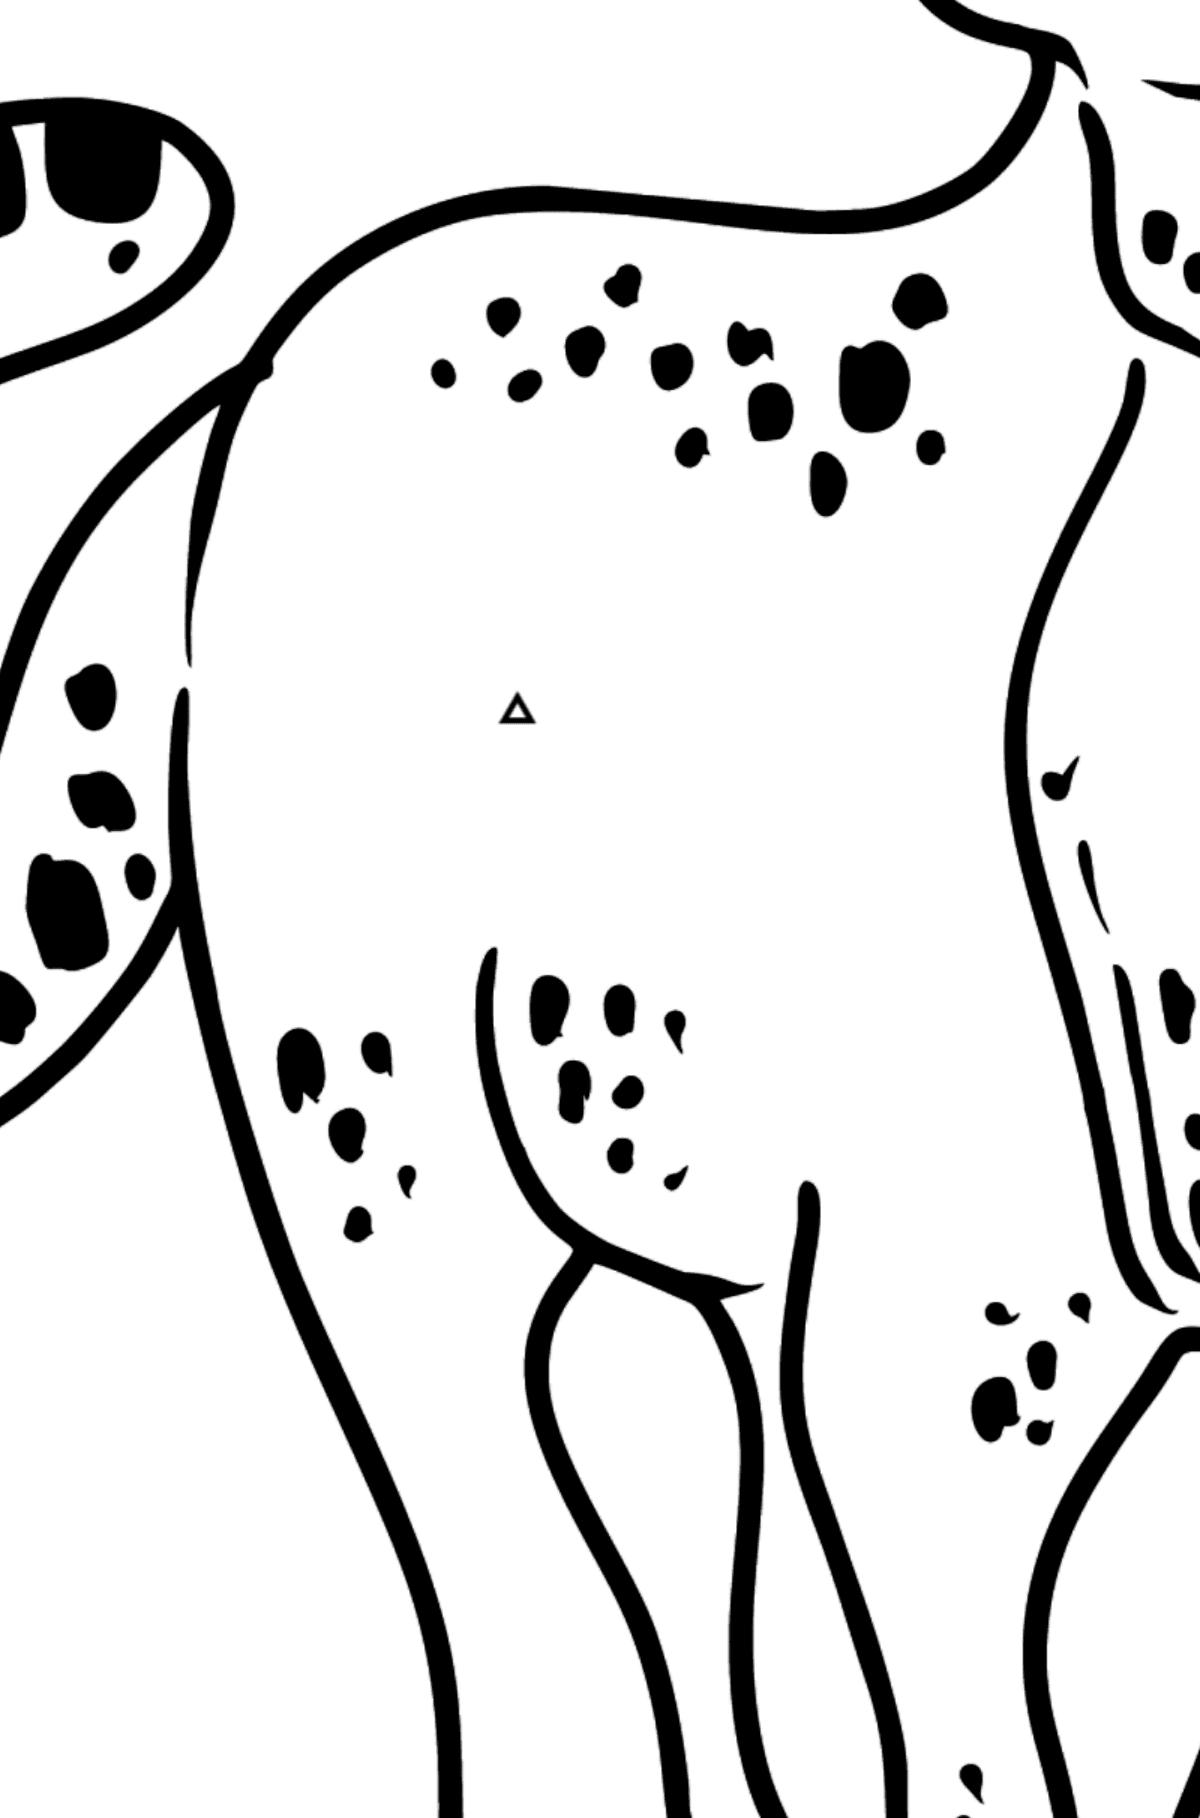 Dibujo de leopardo para colorear - Colorear por Formas Geométricas para Niños